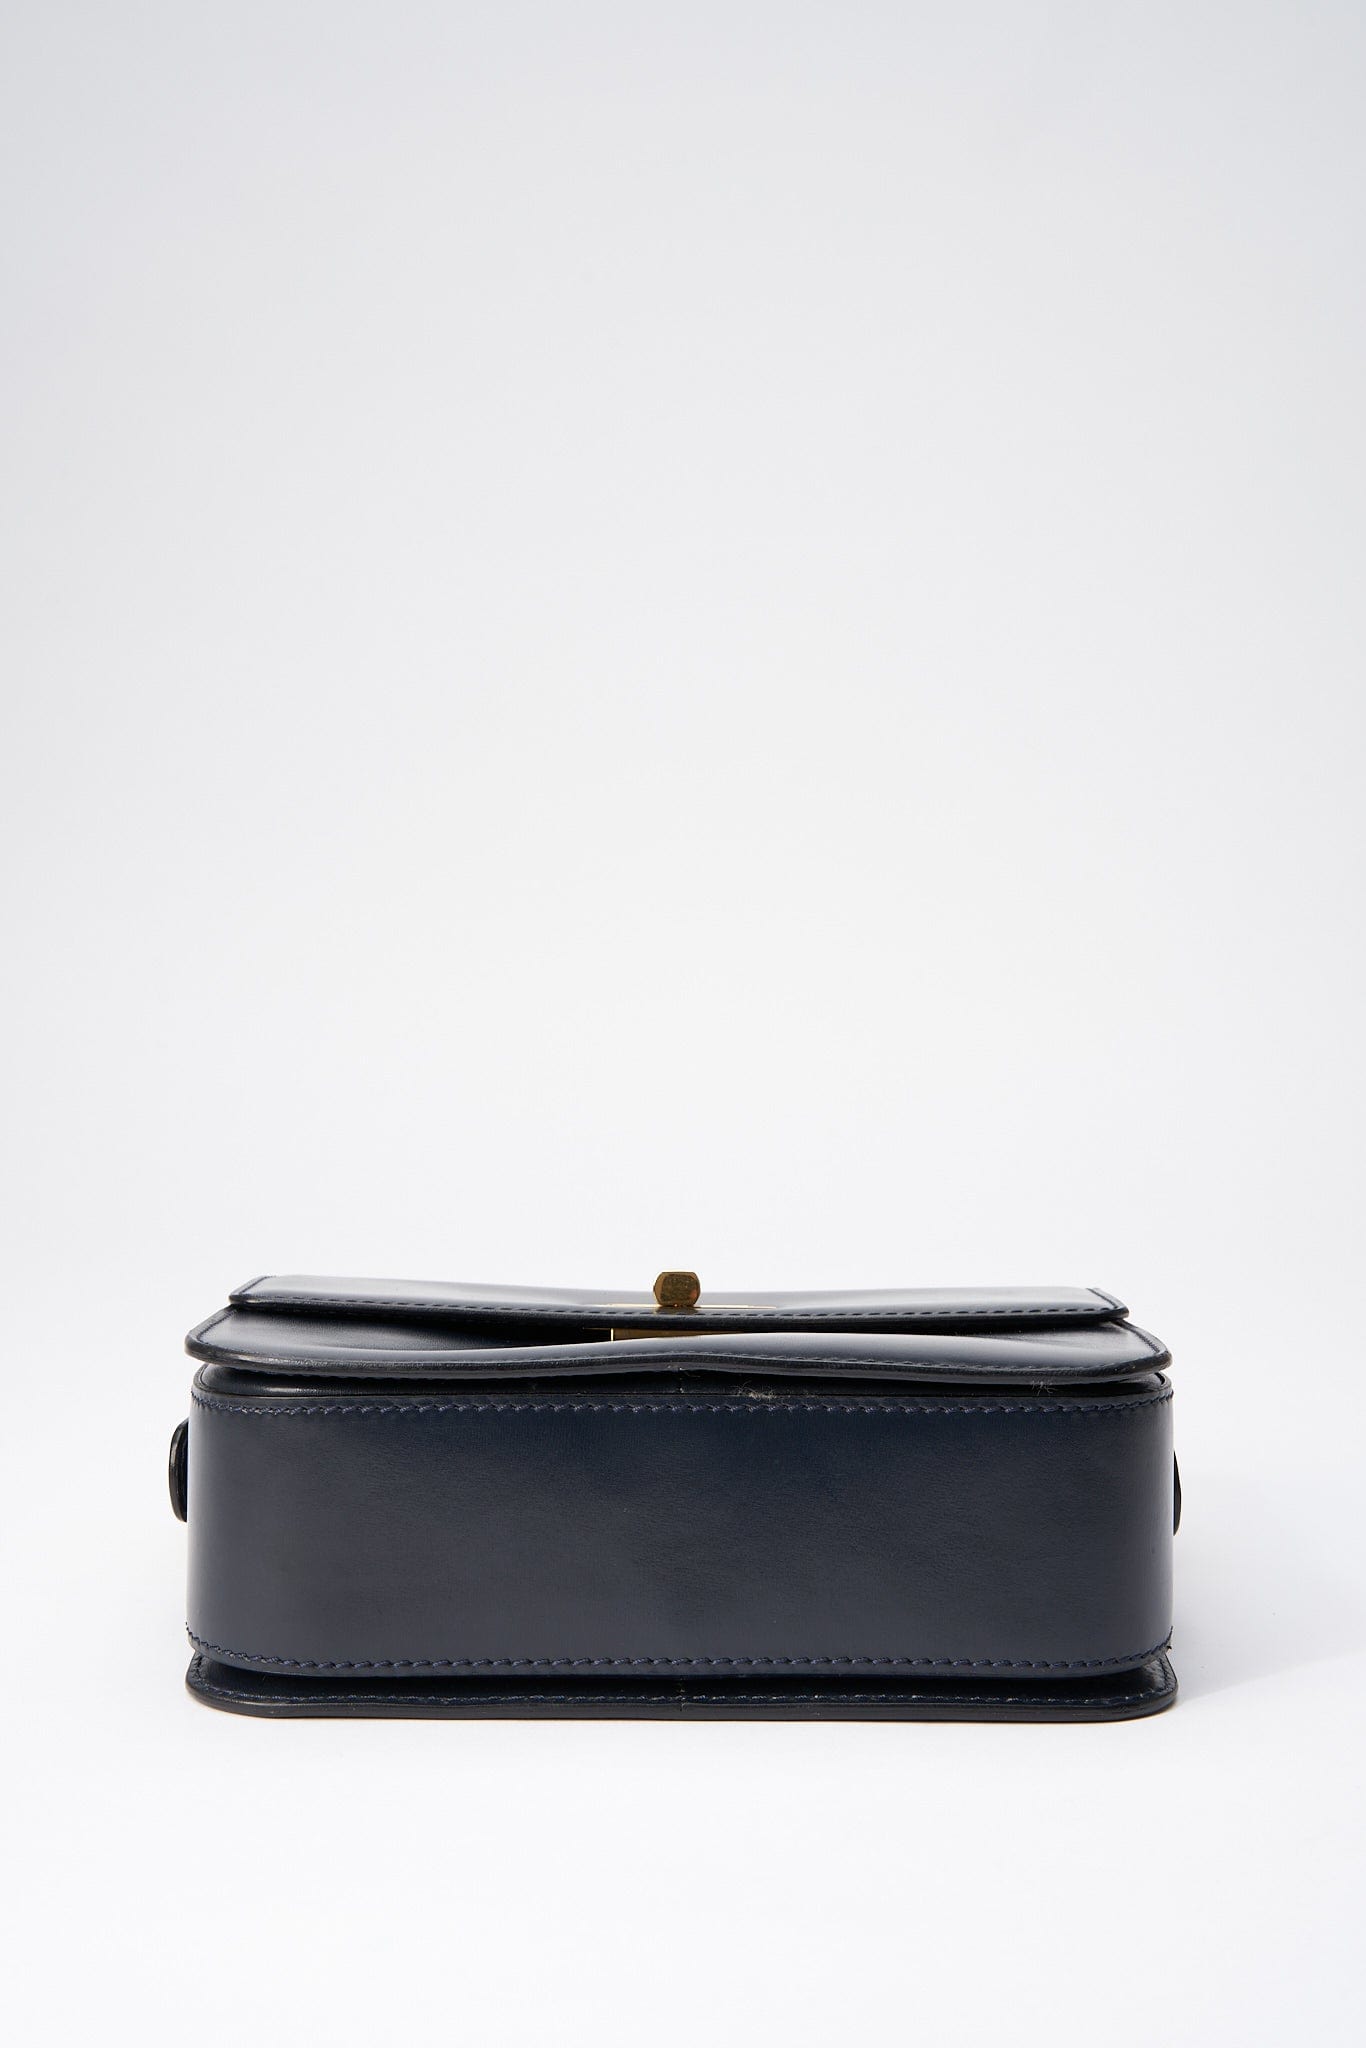 Vintage Celine Navy Leather Box Bag 1805